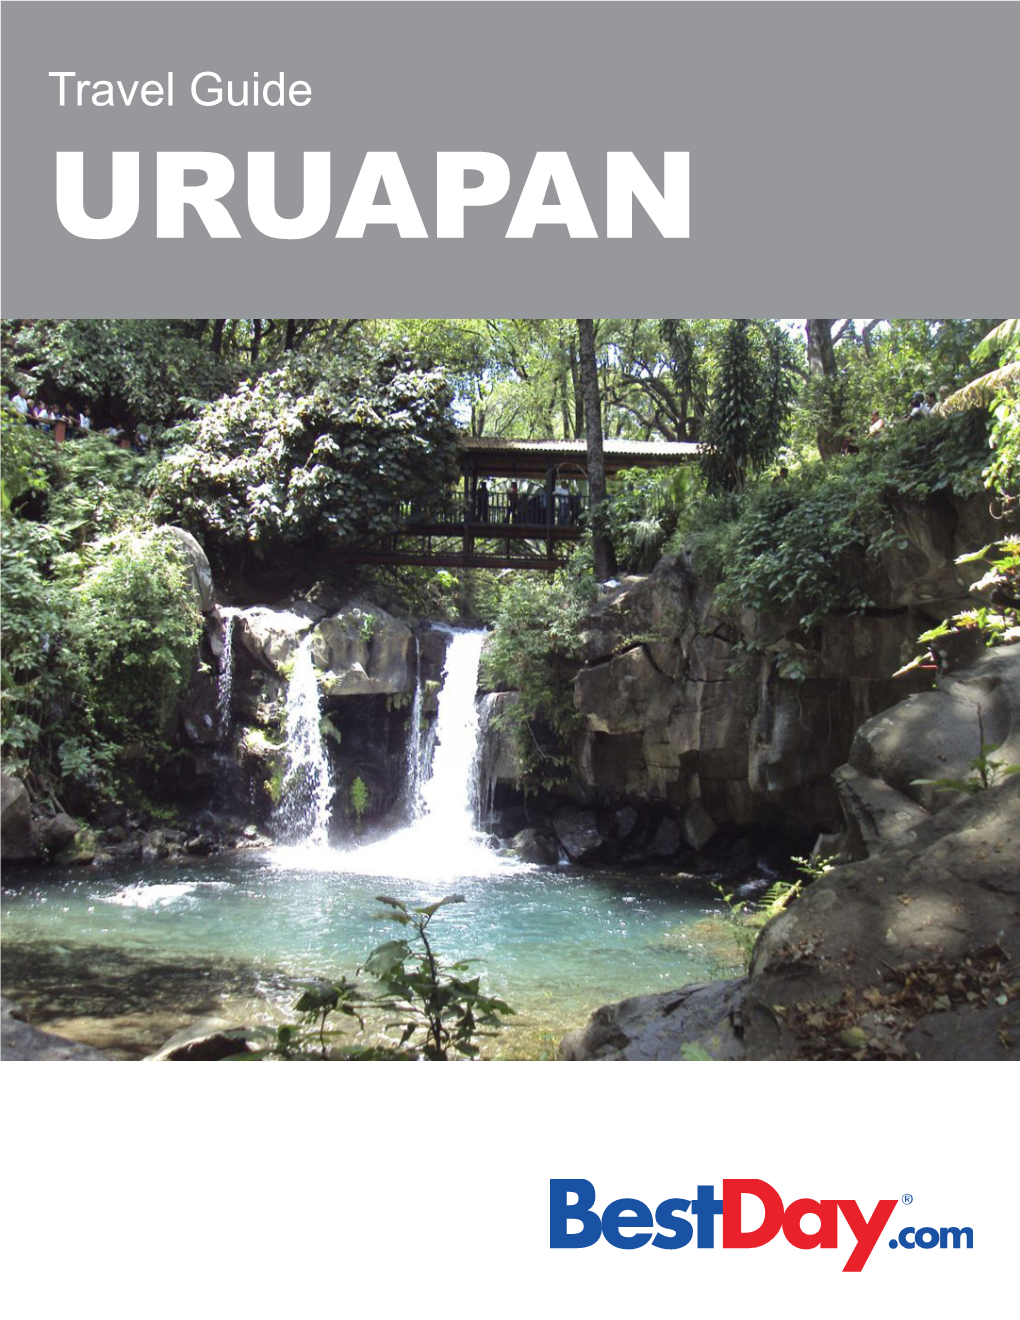 Travel Guide URUAPAN Contents